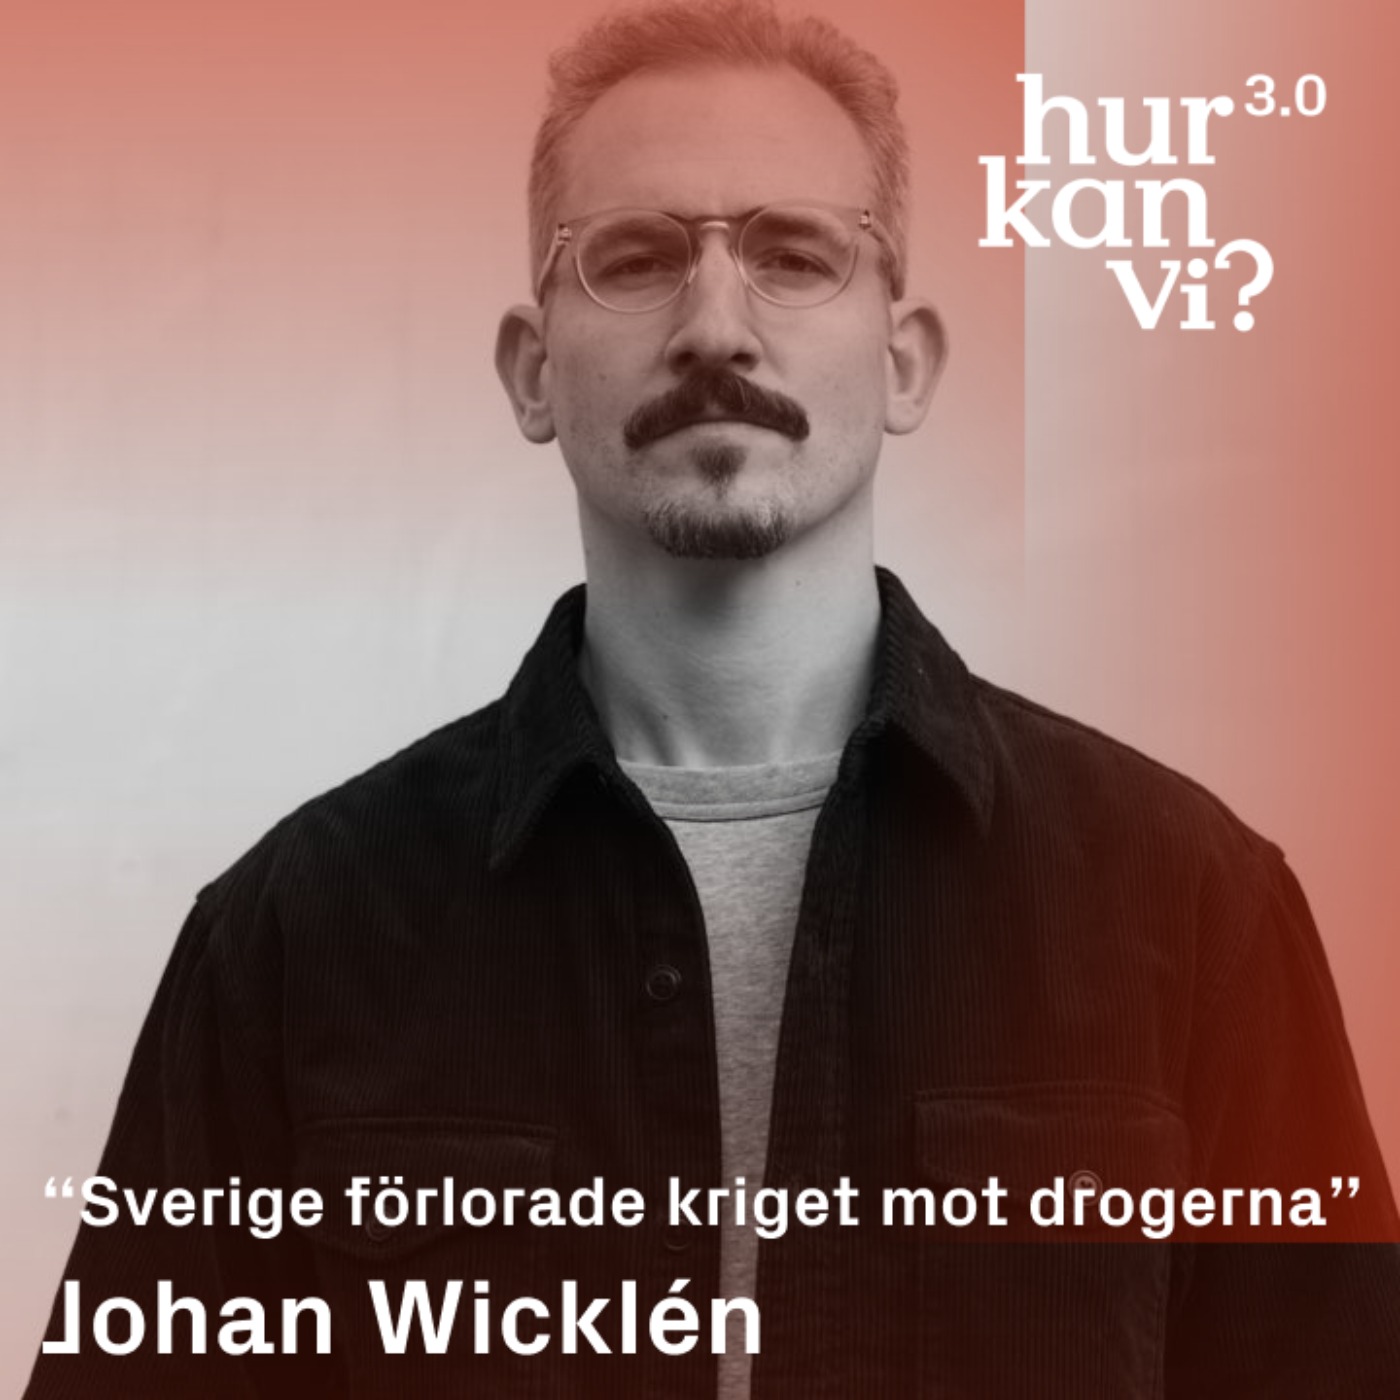 Johan Wicklén - “Sverige förlorade kriget mot drogerna”